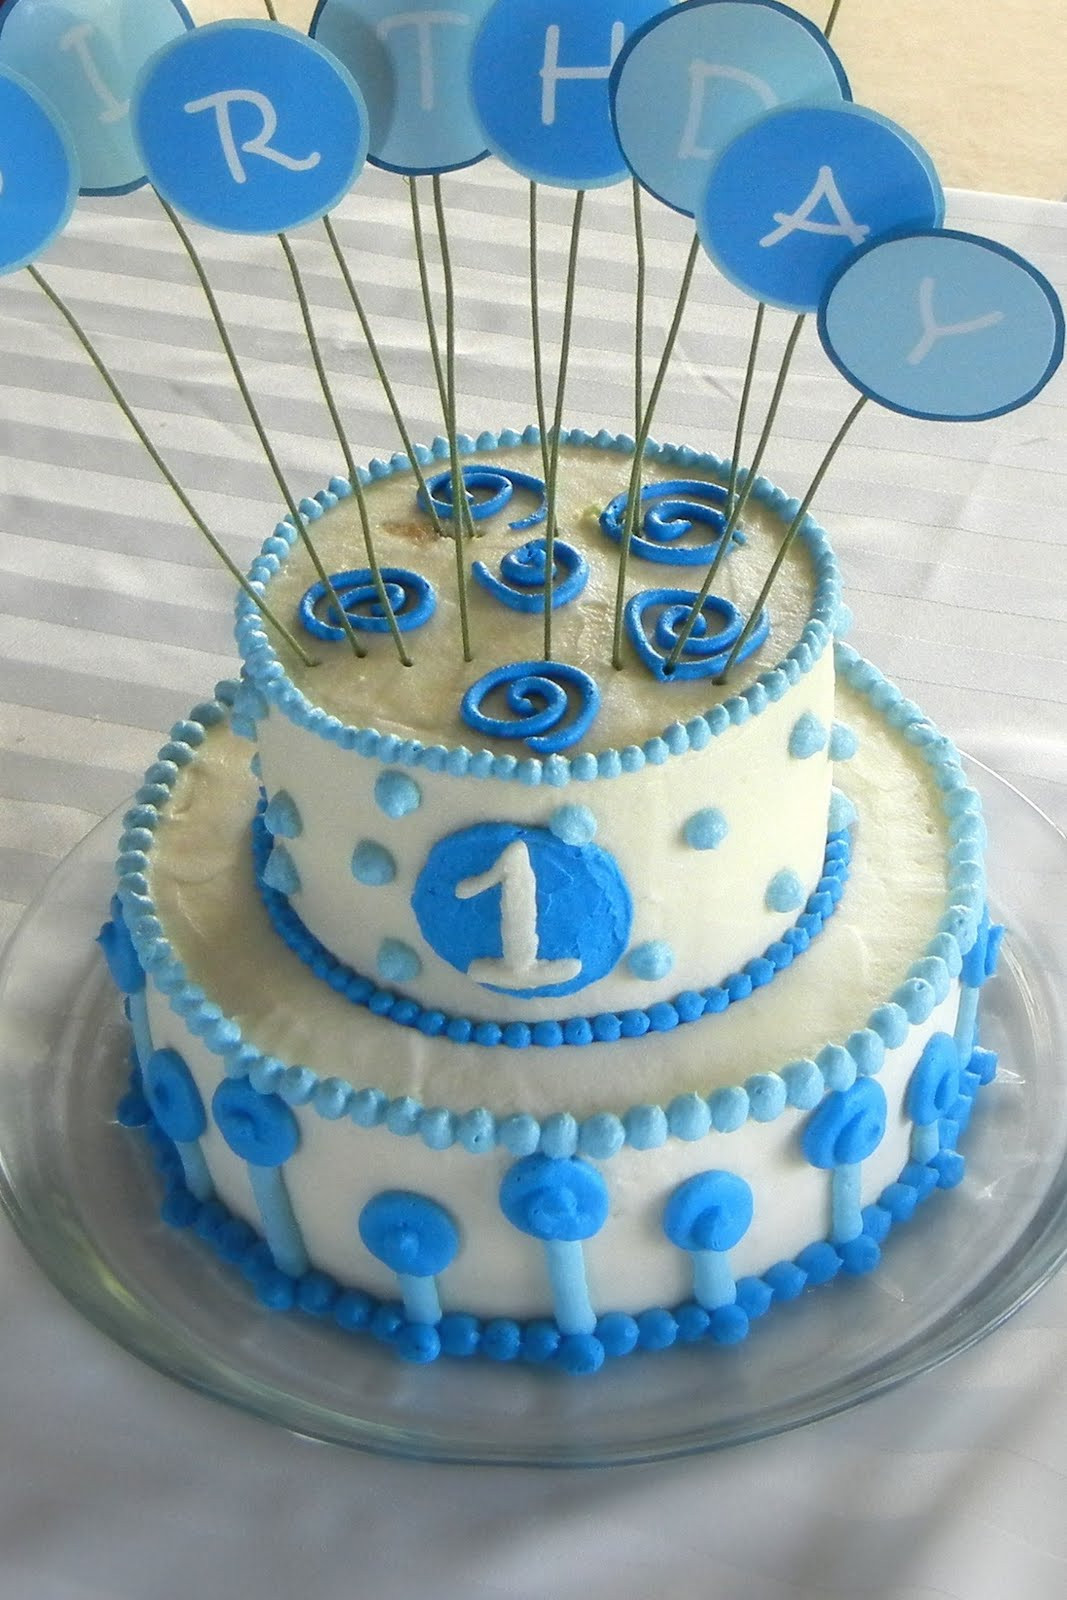 Best ideas about Baby Boy 1st Birthday Cake
. Save or Pin Party Cakes Baby Boy 1st Birthday Cake Now.